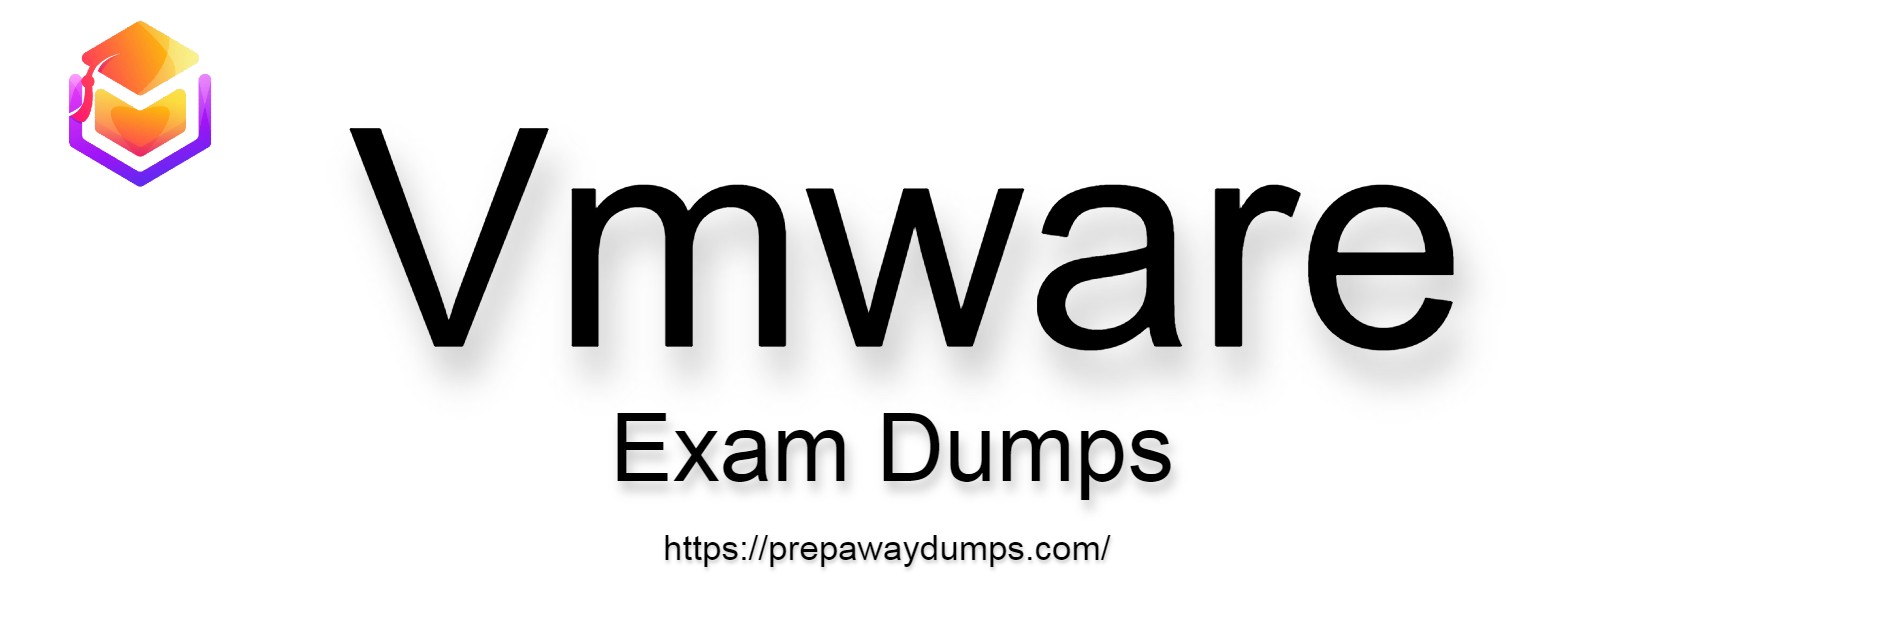 Vmware Exam Dumps